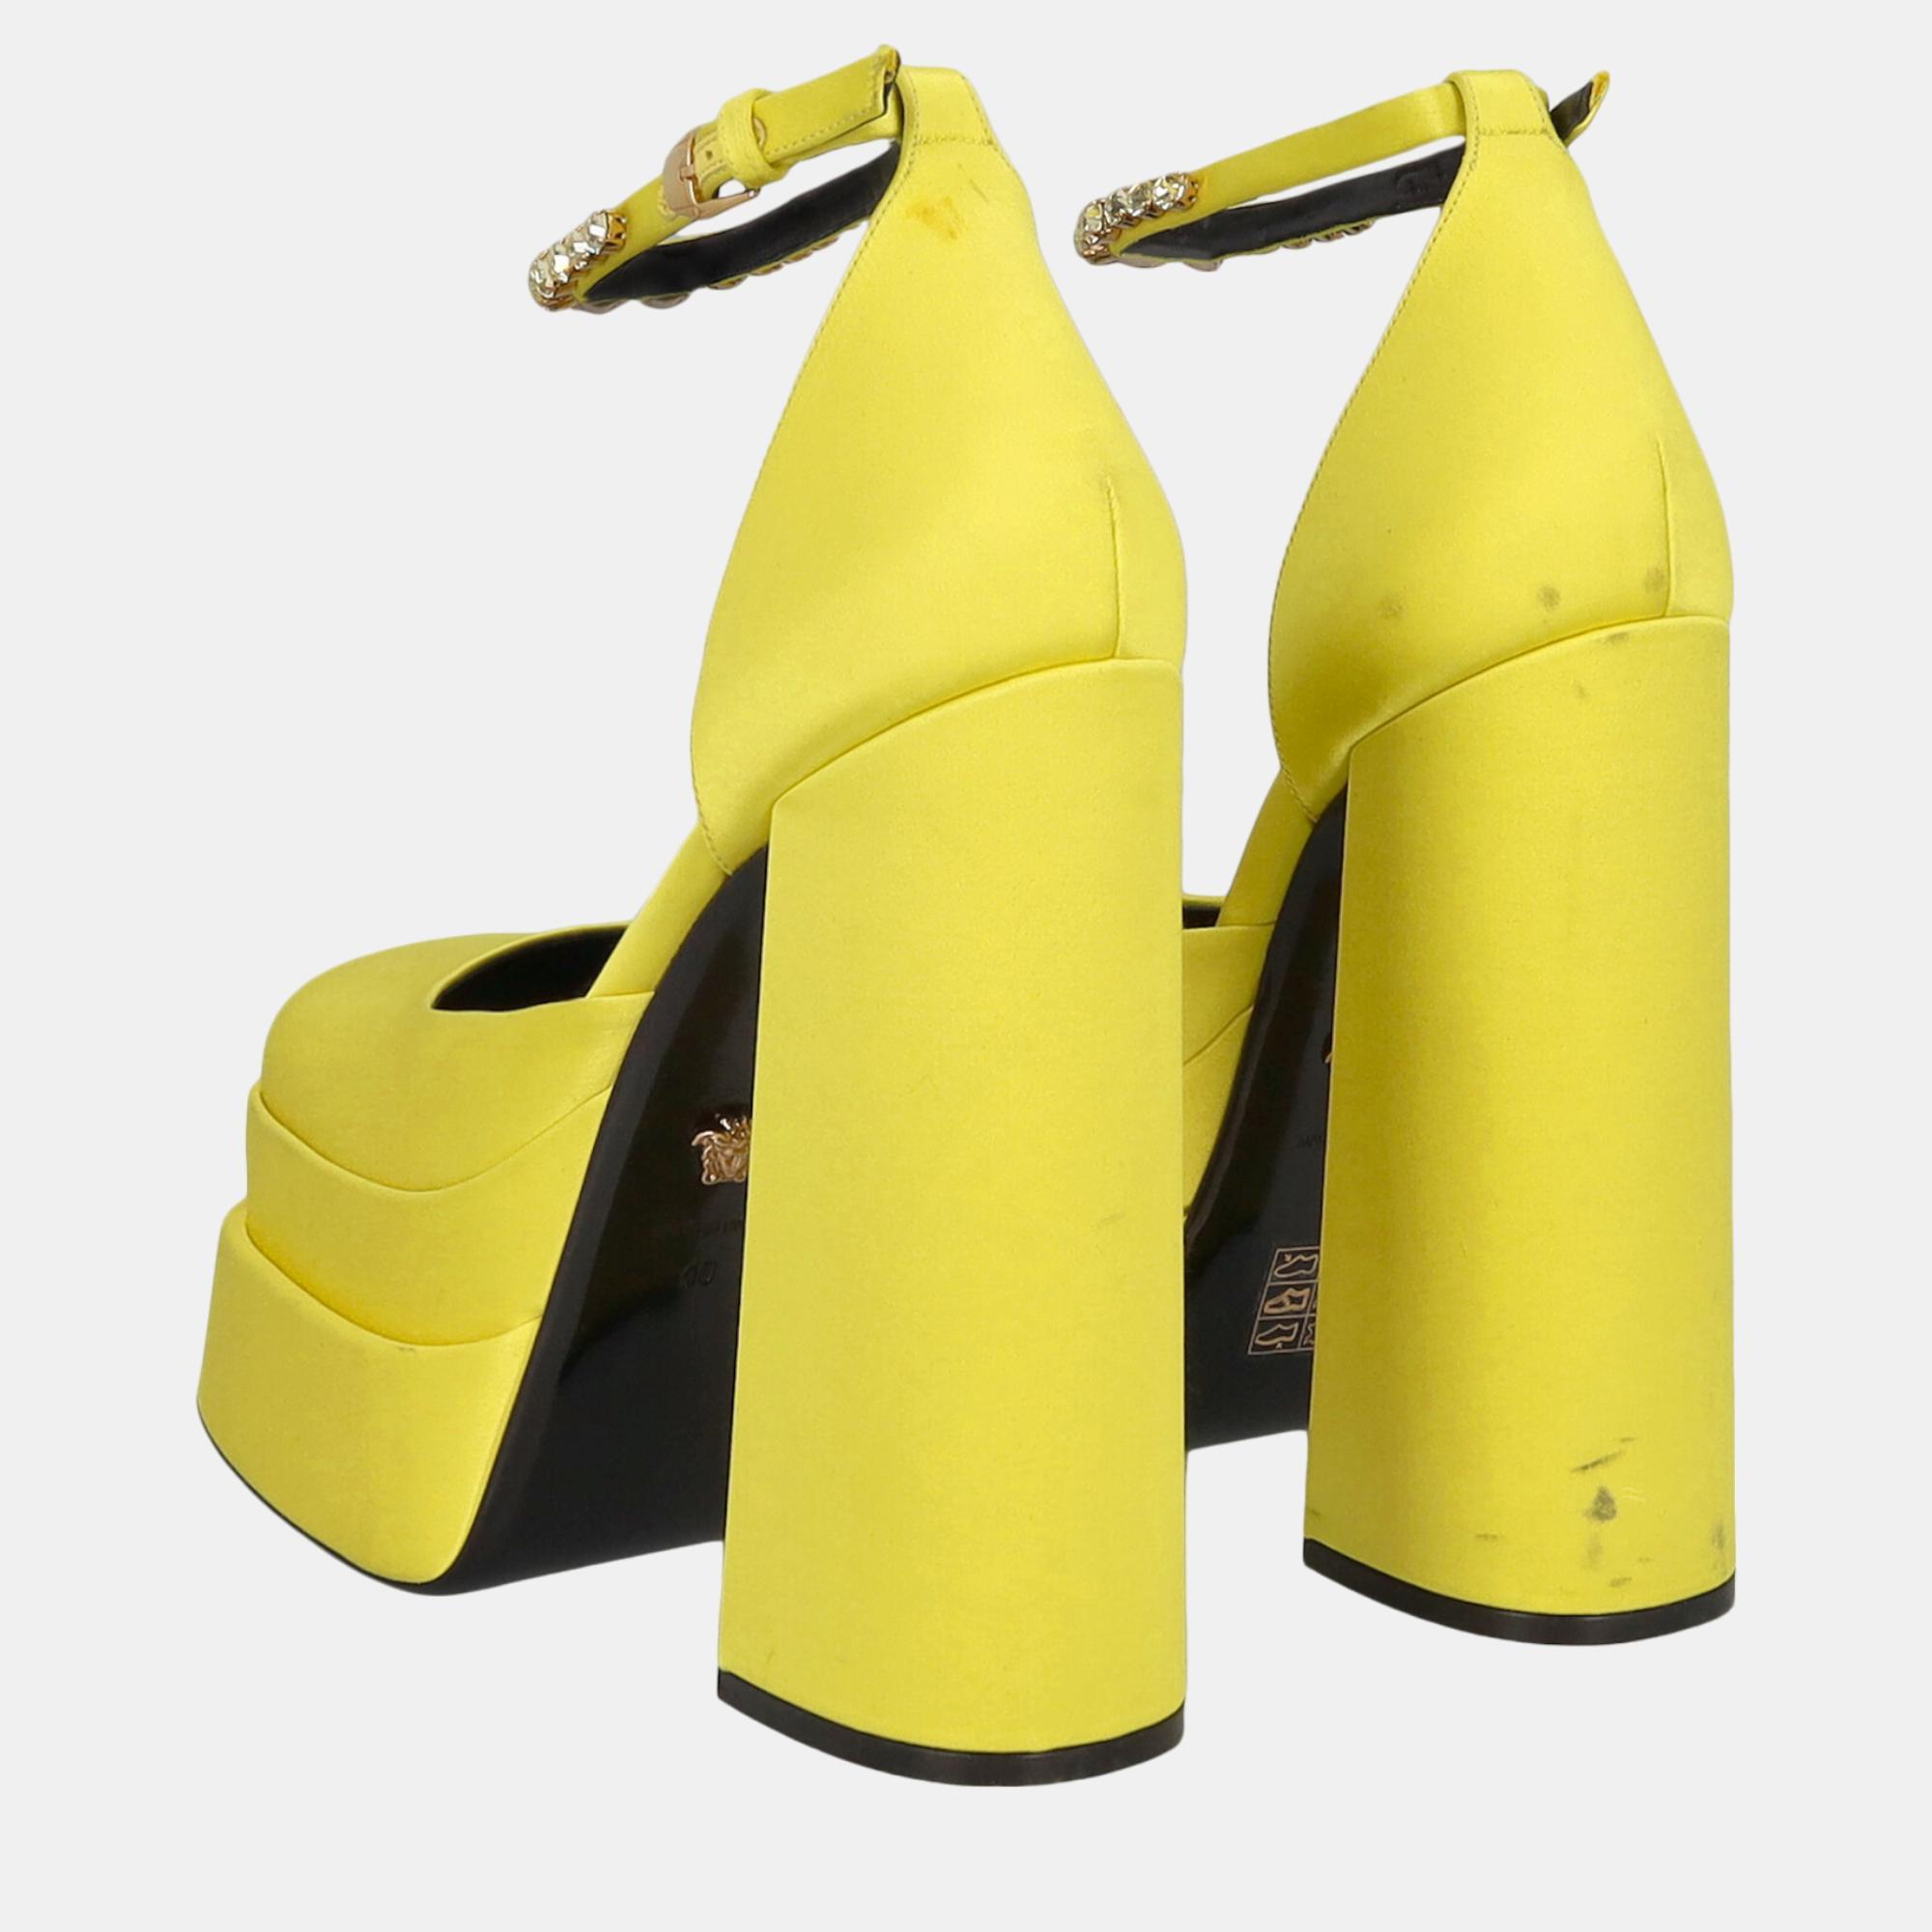 Versace  Women's Fabric Heels - Yellow - EU 40